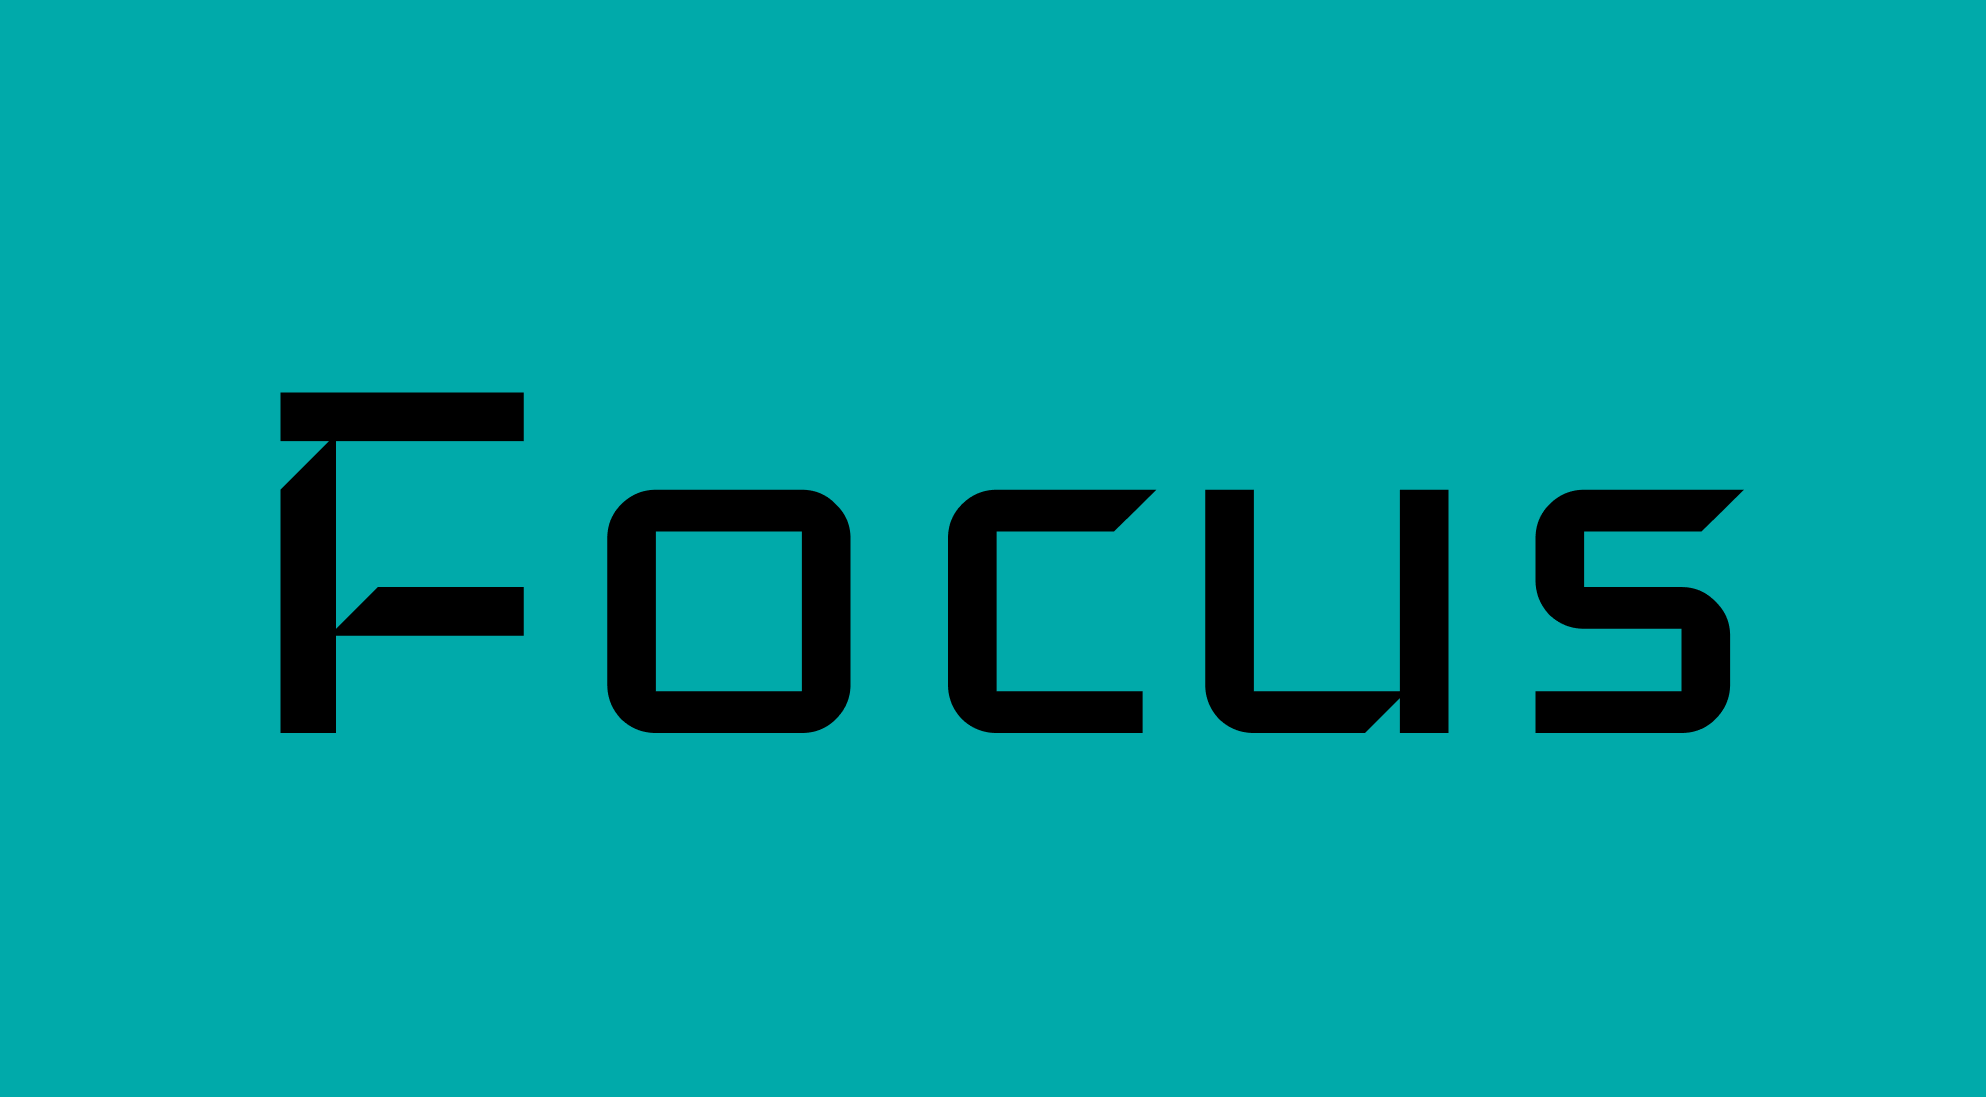 Focus app